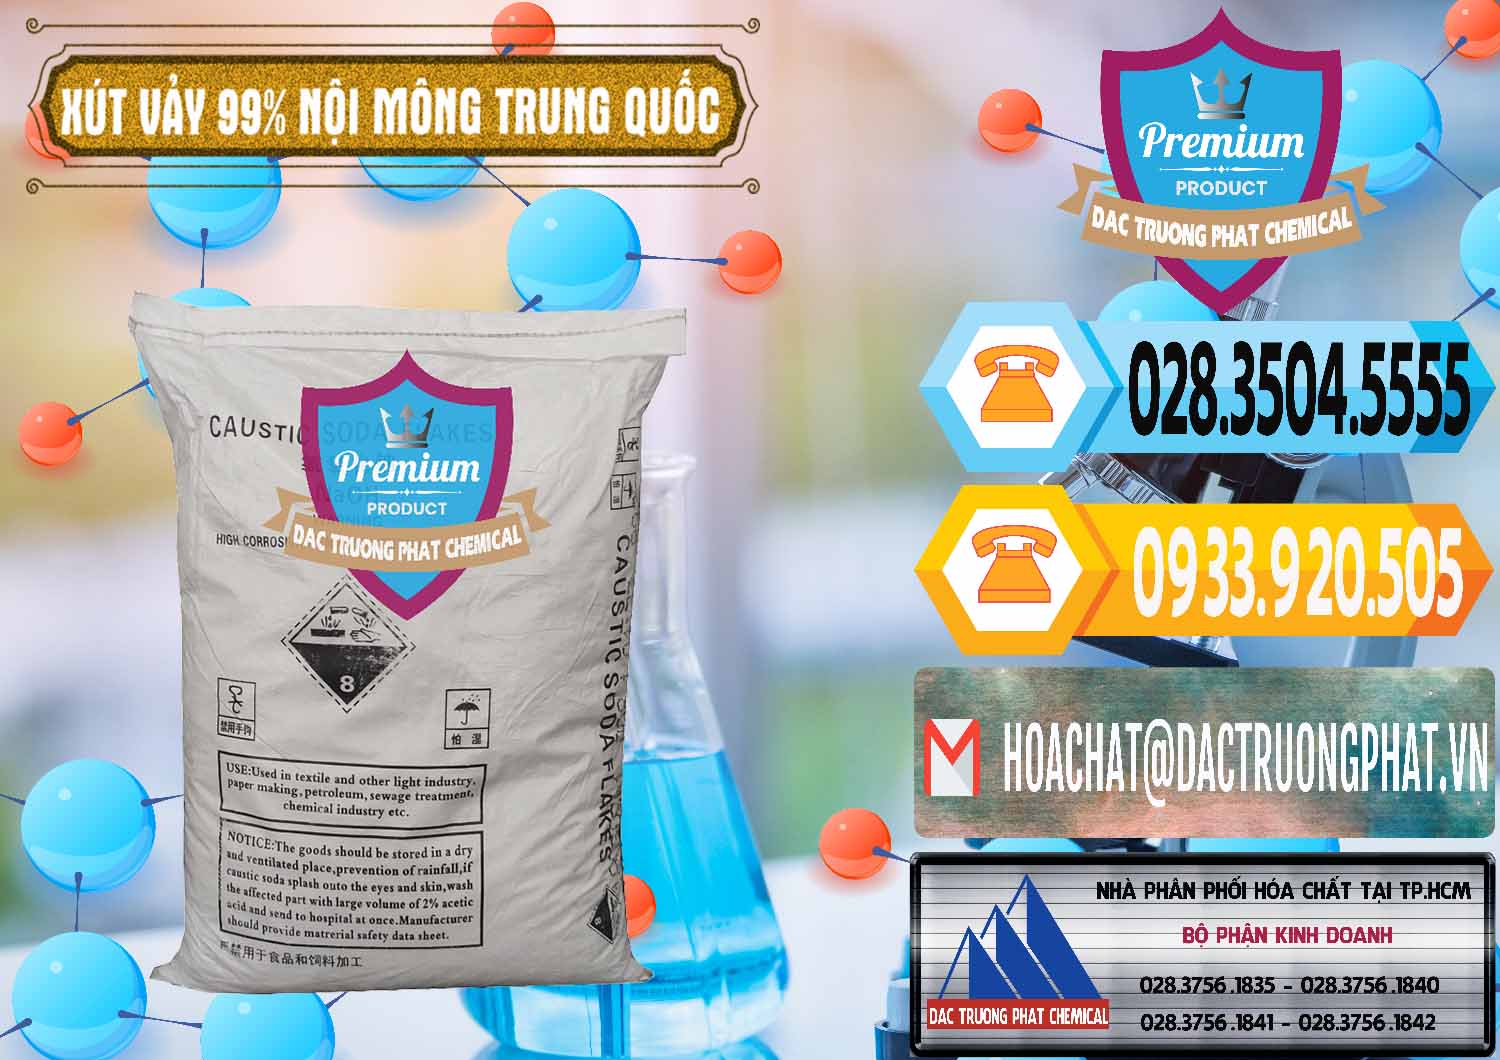 Công ty bán _ cung ứng Xút Vảy - NaOH Vảy 99% Nội Mông Trung Quốc China - 0228 - Đơn vị chuyên kinh doanh và phân phối hóa chất tại TP.HCM - hoachattayrua.net